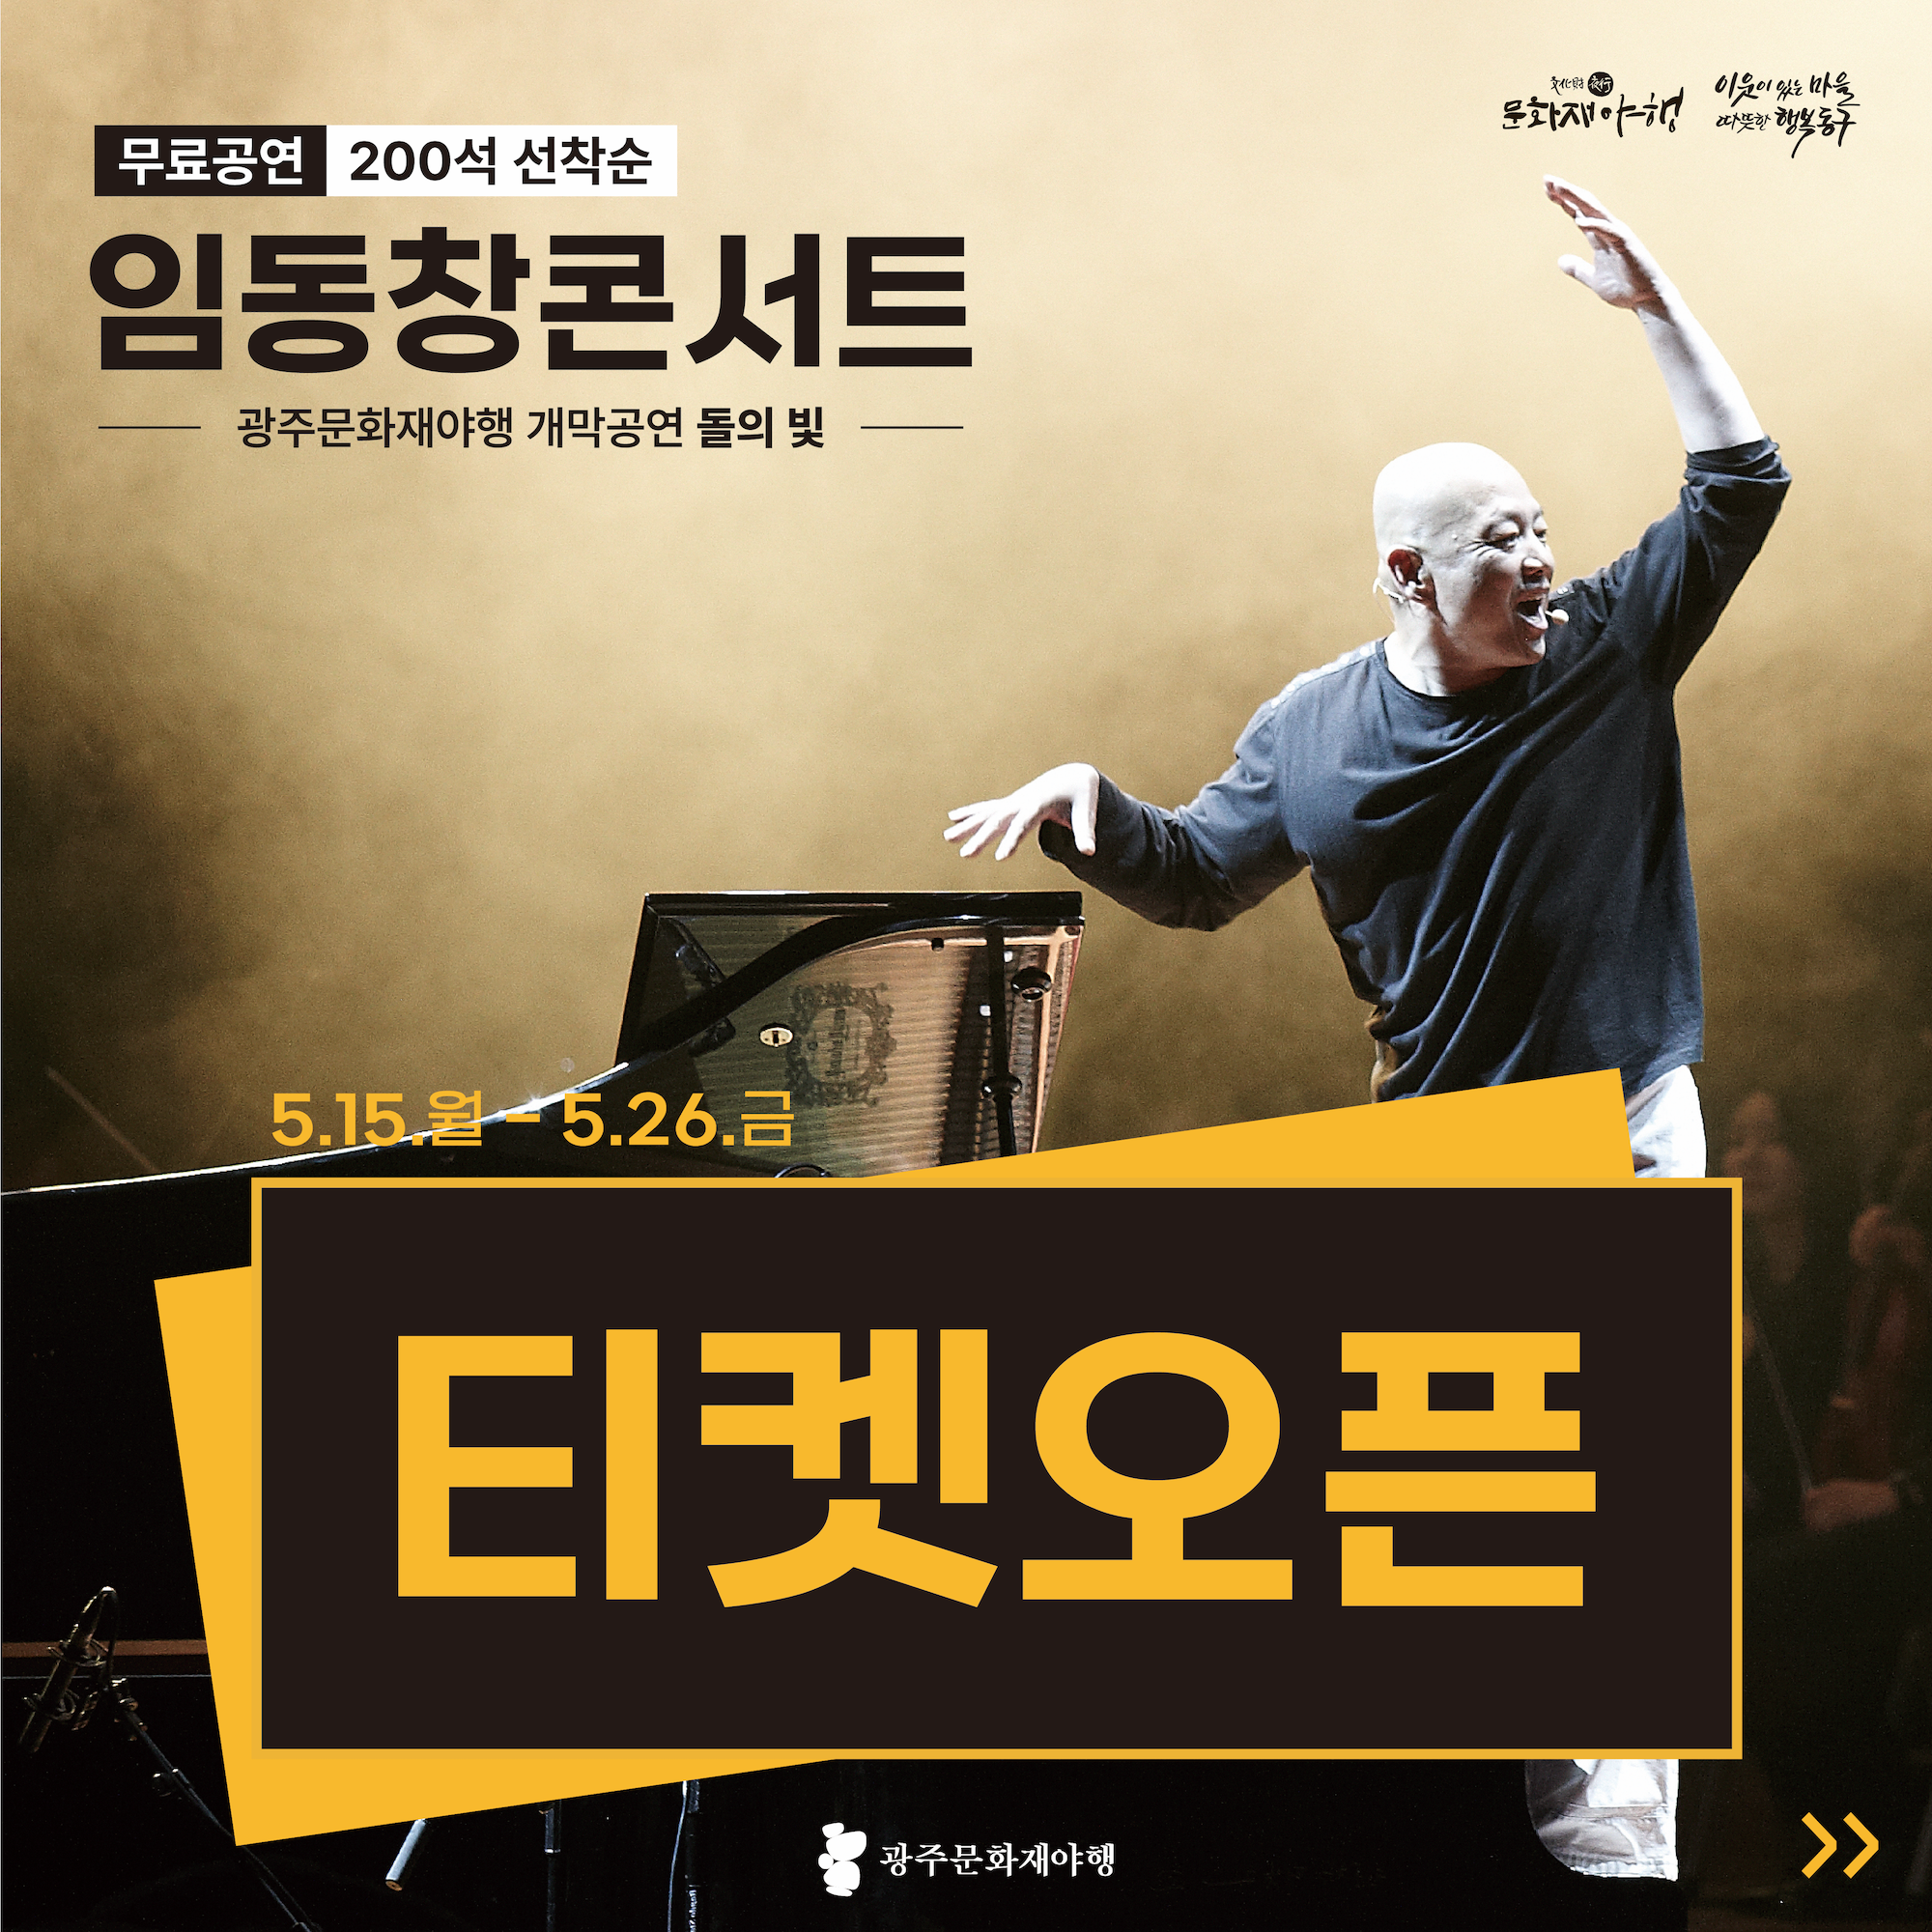 [야설] 풍류피아니스트 임동창 콘서트 '돌의 빛' 티켓 예매